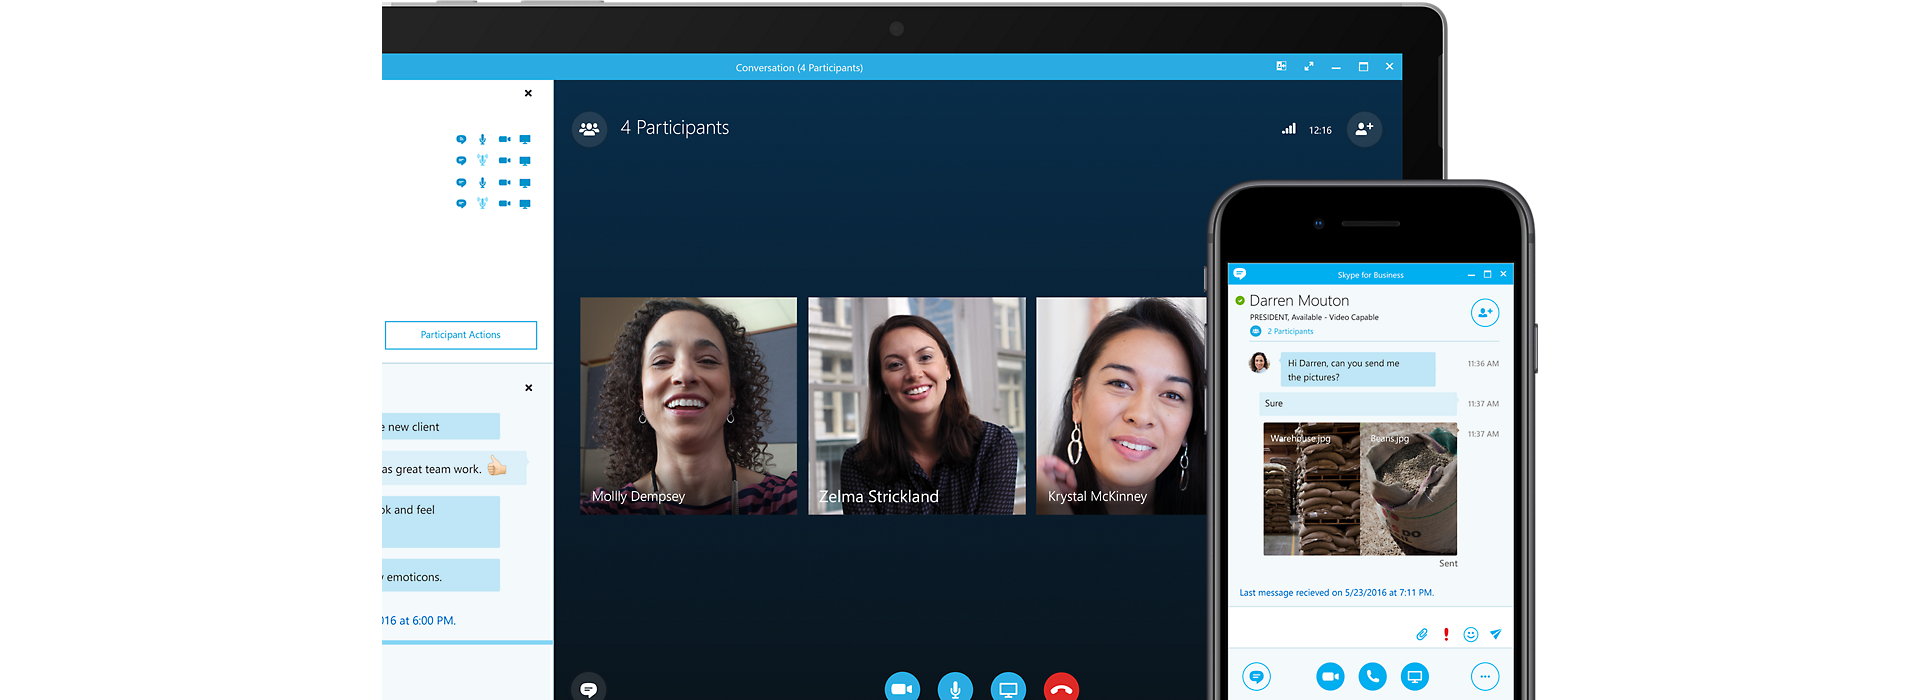 Gerätebildschirm mit einer Skype for Business-Onlinebesprechung, die vom Display eines Mobilgeräts überlagert wird, das derselben Konferenz zugeschaltet ist